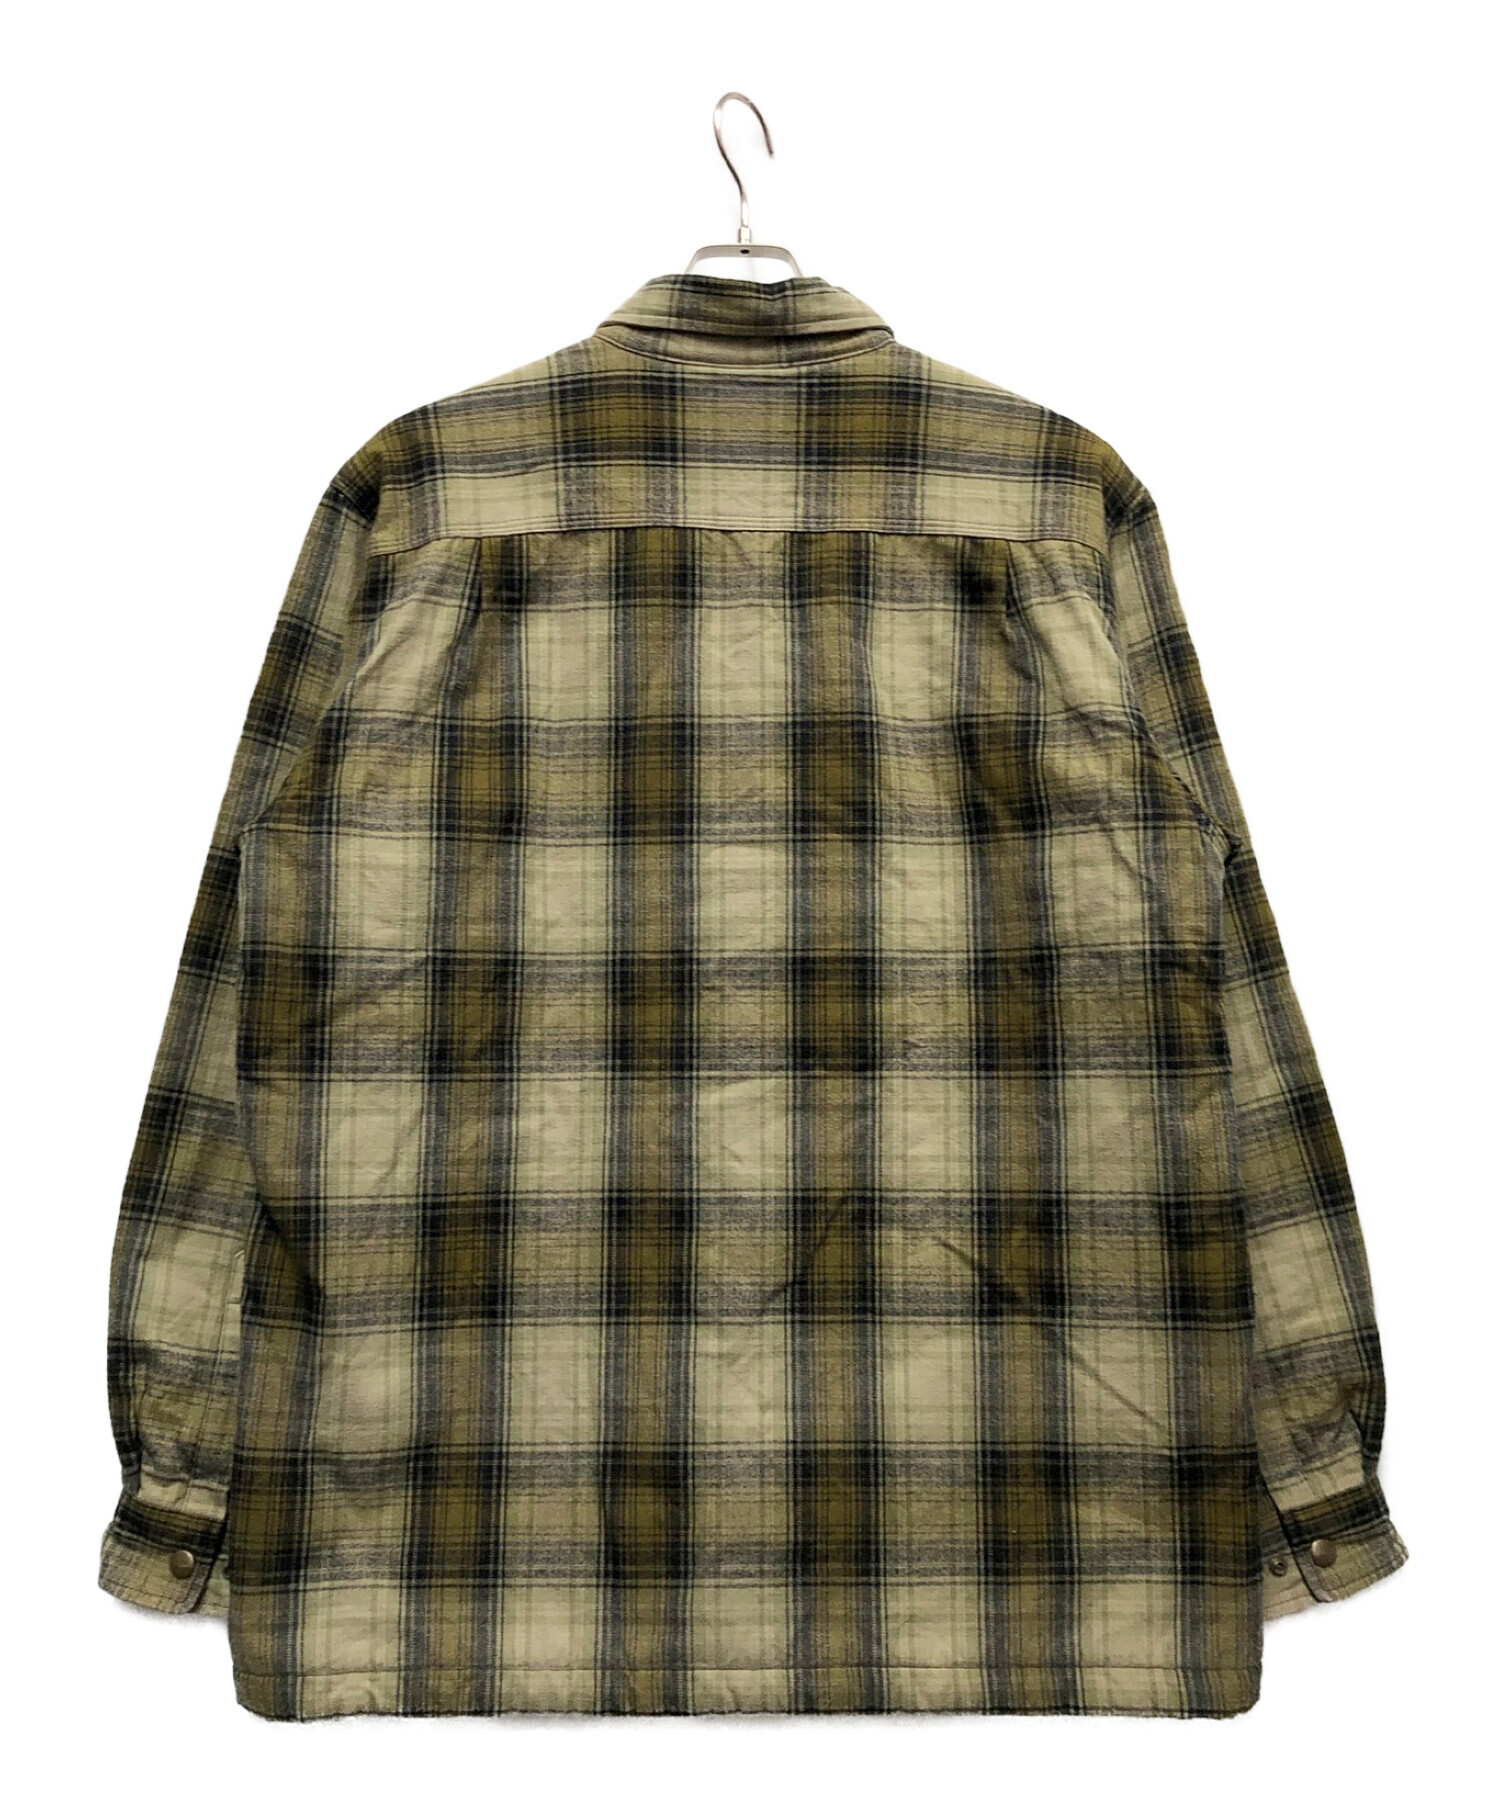 CarHartt (カーハート) フランネルシャツジャケット グリーン サイズ:L